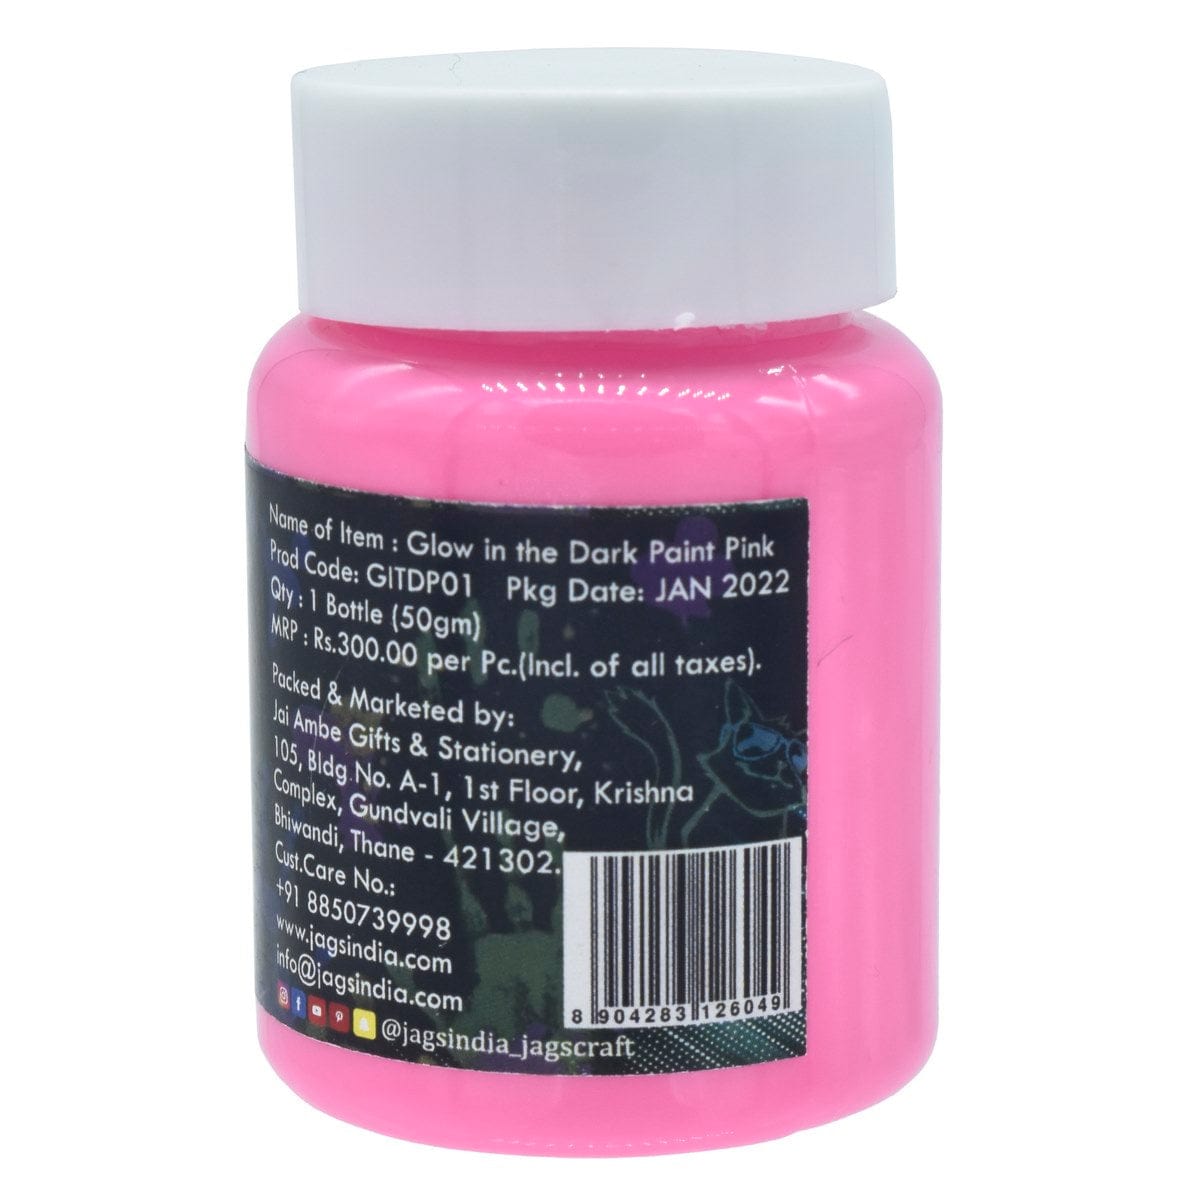 jags-mumbai Glow Powder & Pigment Glow In The Dark Paste 50gm Pink GITDP01